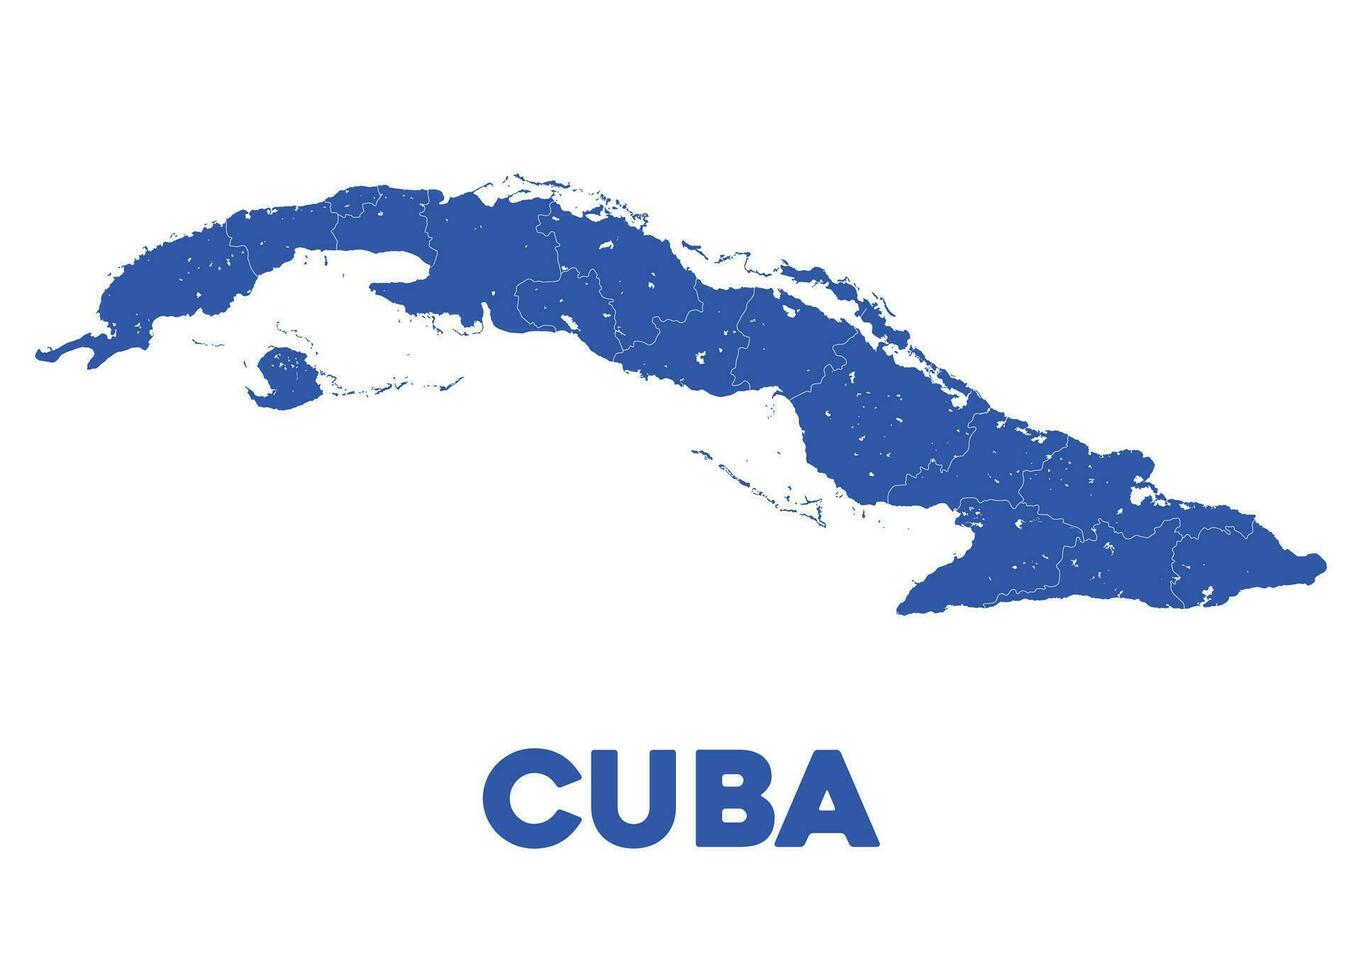 detailliert Kuba Karte vektor